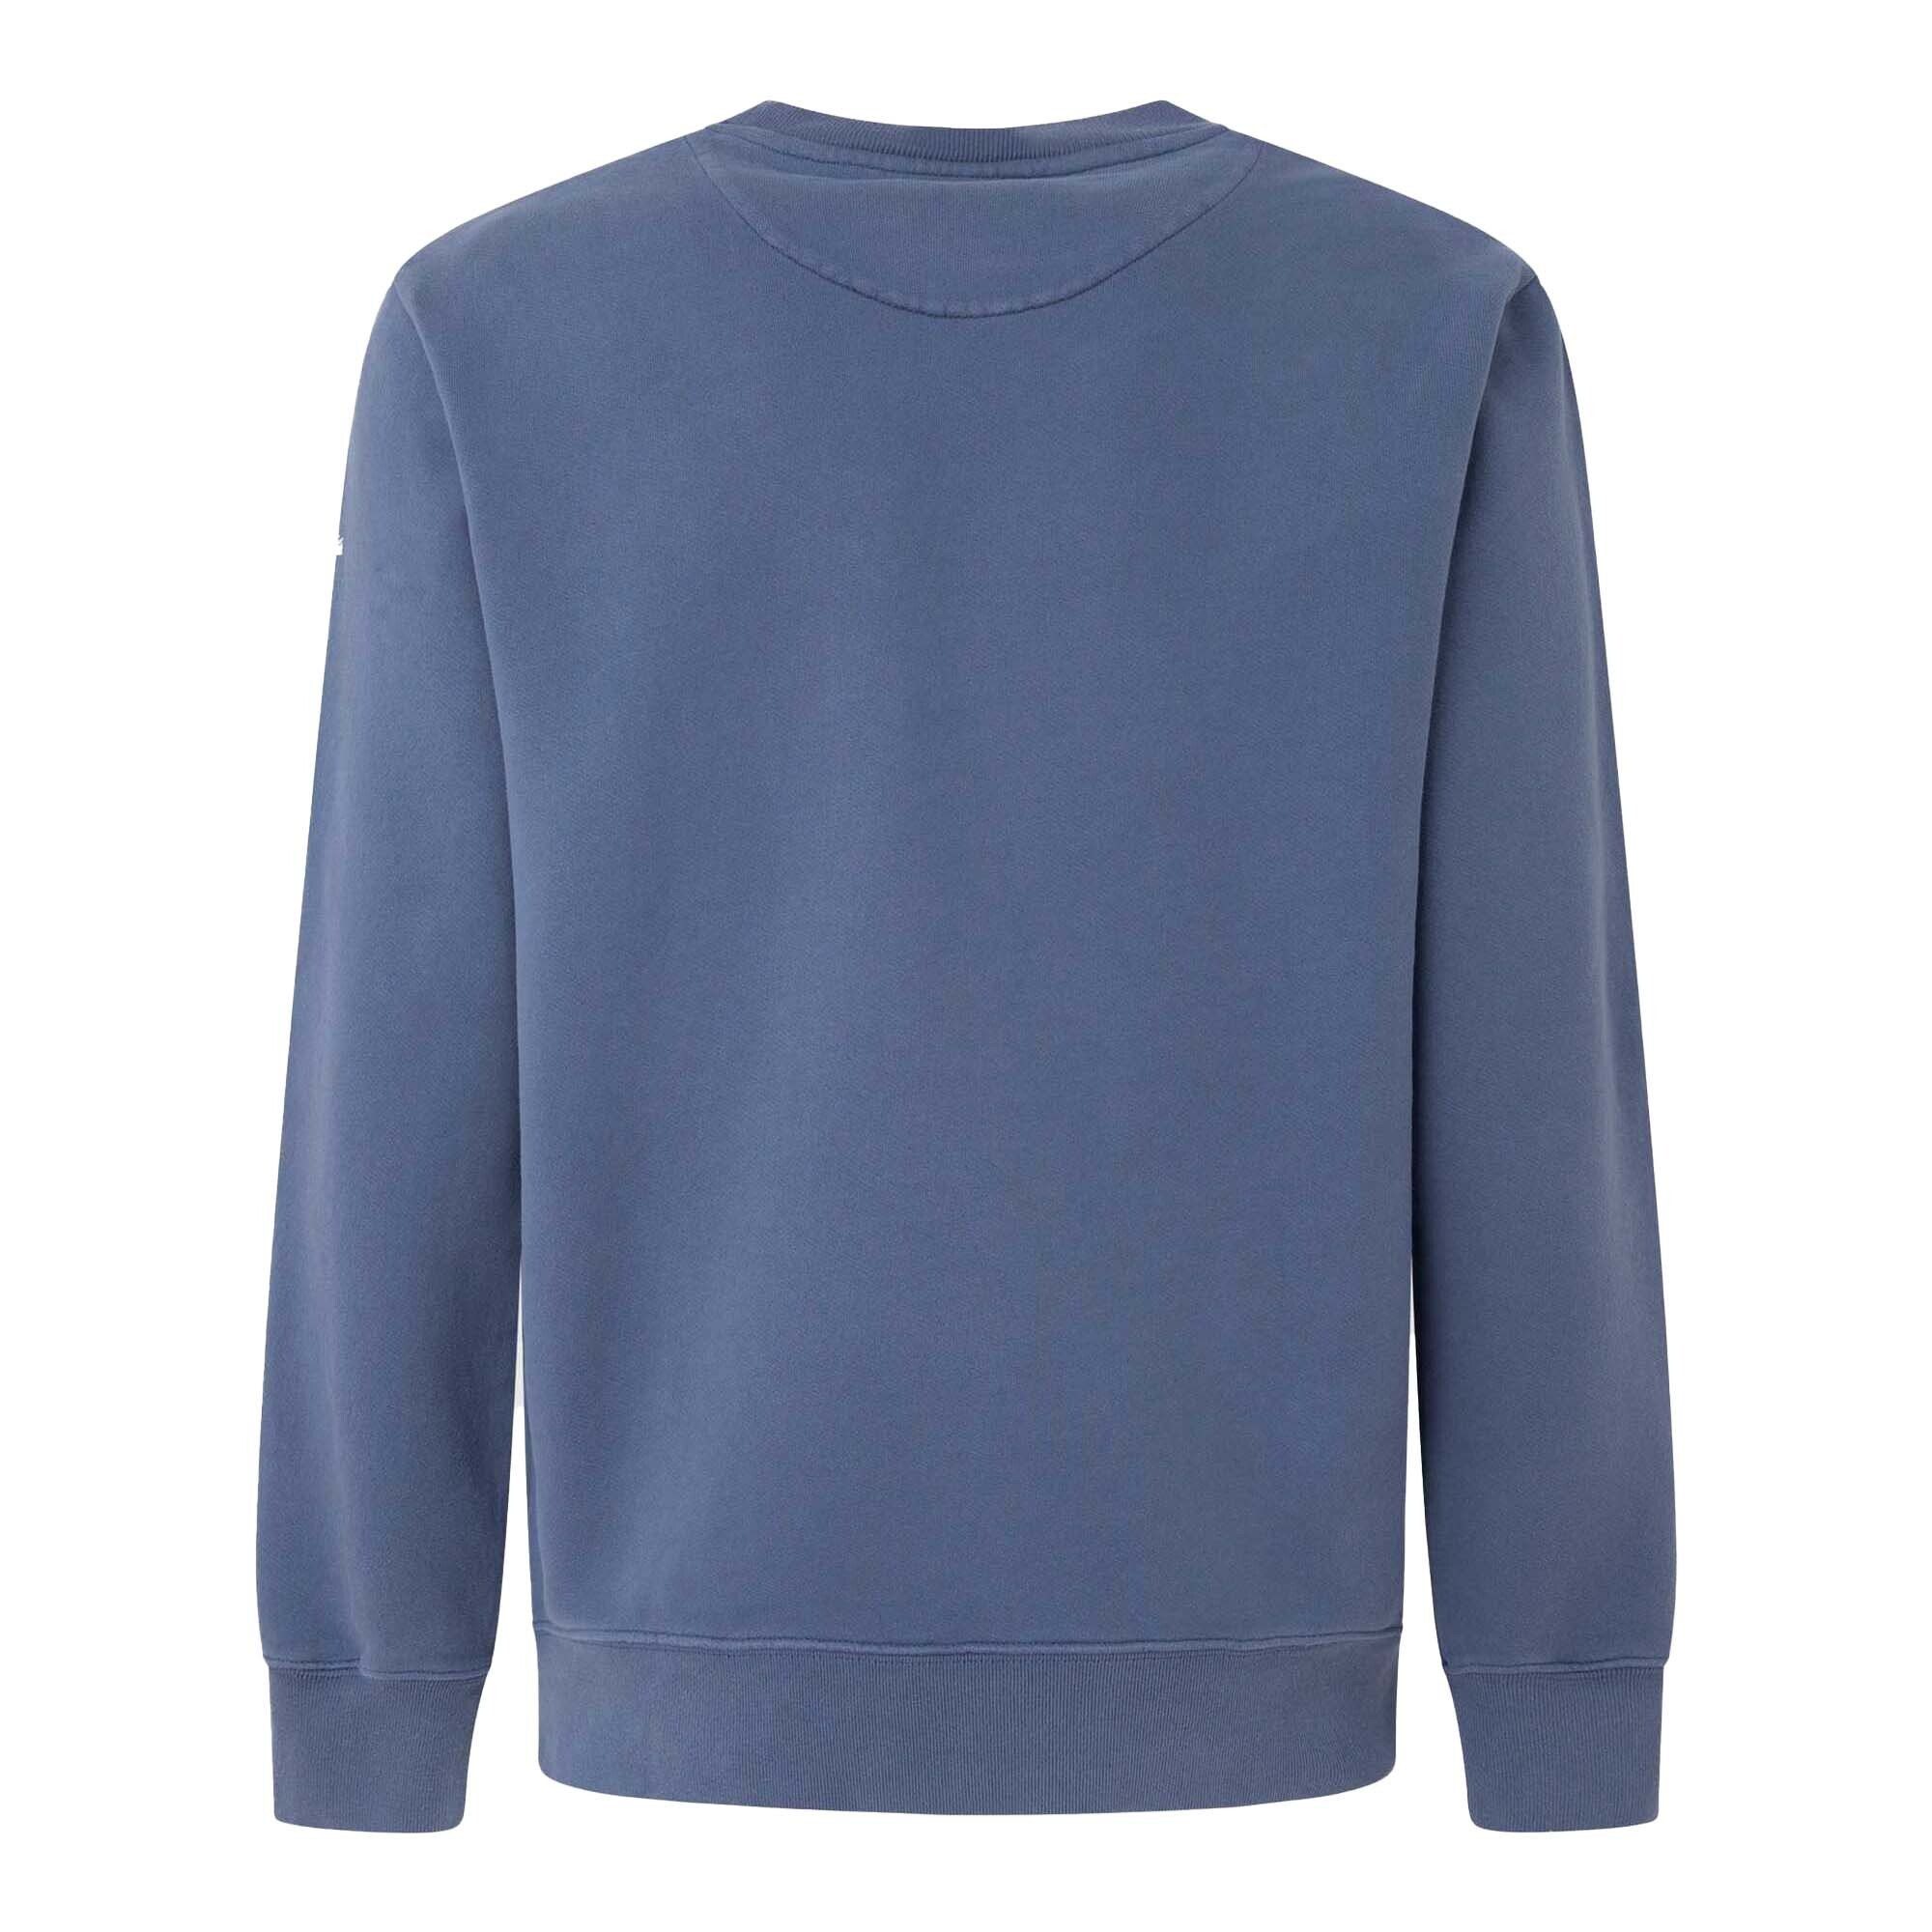 Pepe Jeans Sweatshirt Herren Sweatshirt DAVID Pullover Blau CREW, 